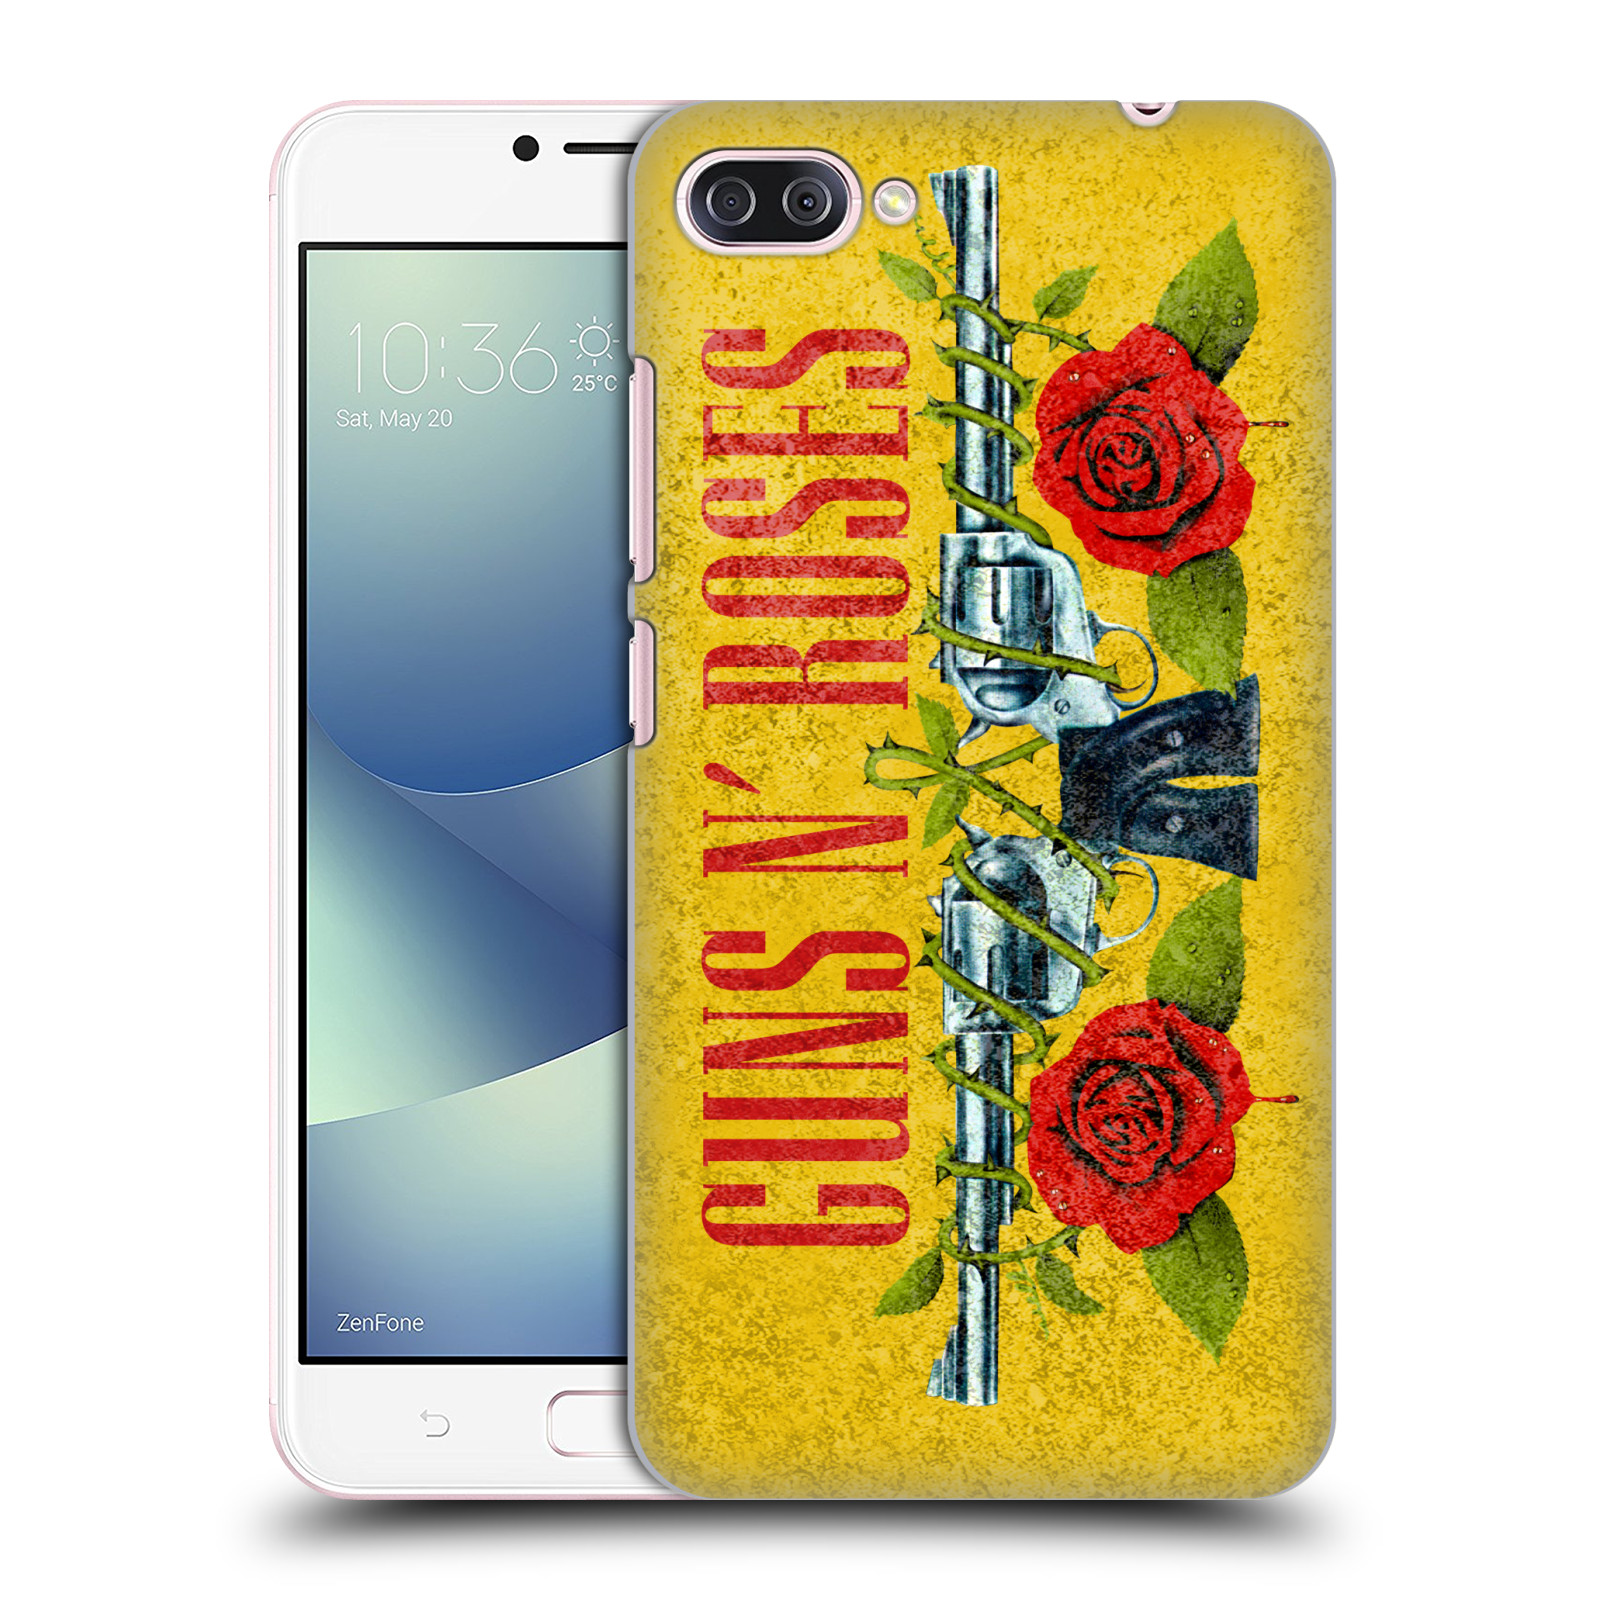 HEAD CASE plastový obal na mobil Asus Zenfone 4 MAX ZC554KL hudební skupina Guns N Roses pistole a růže žluté pozadí